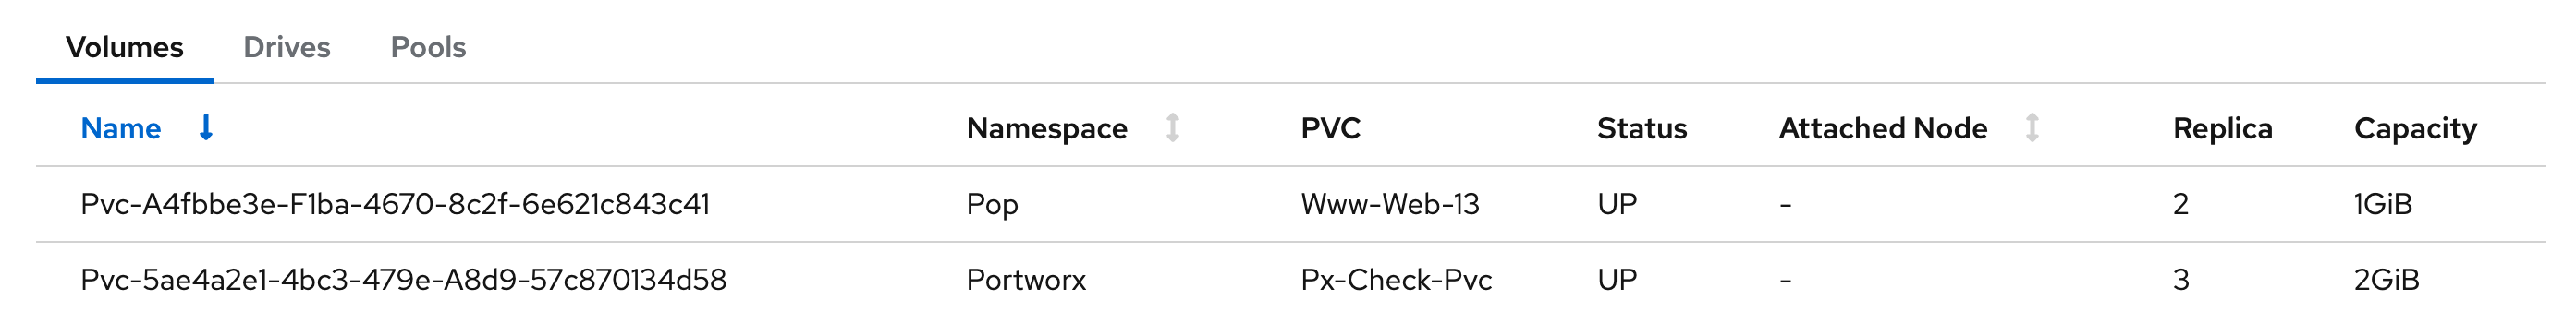 PVC status